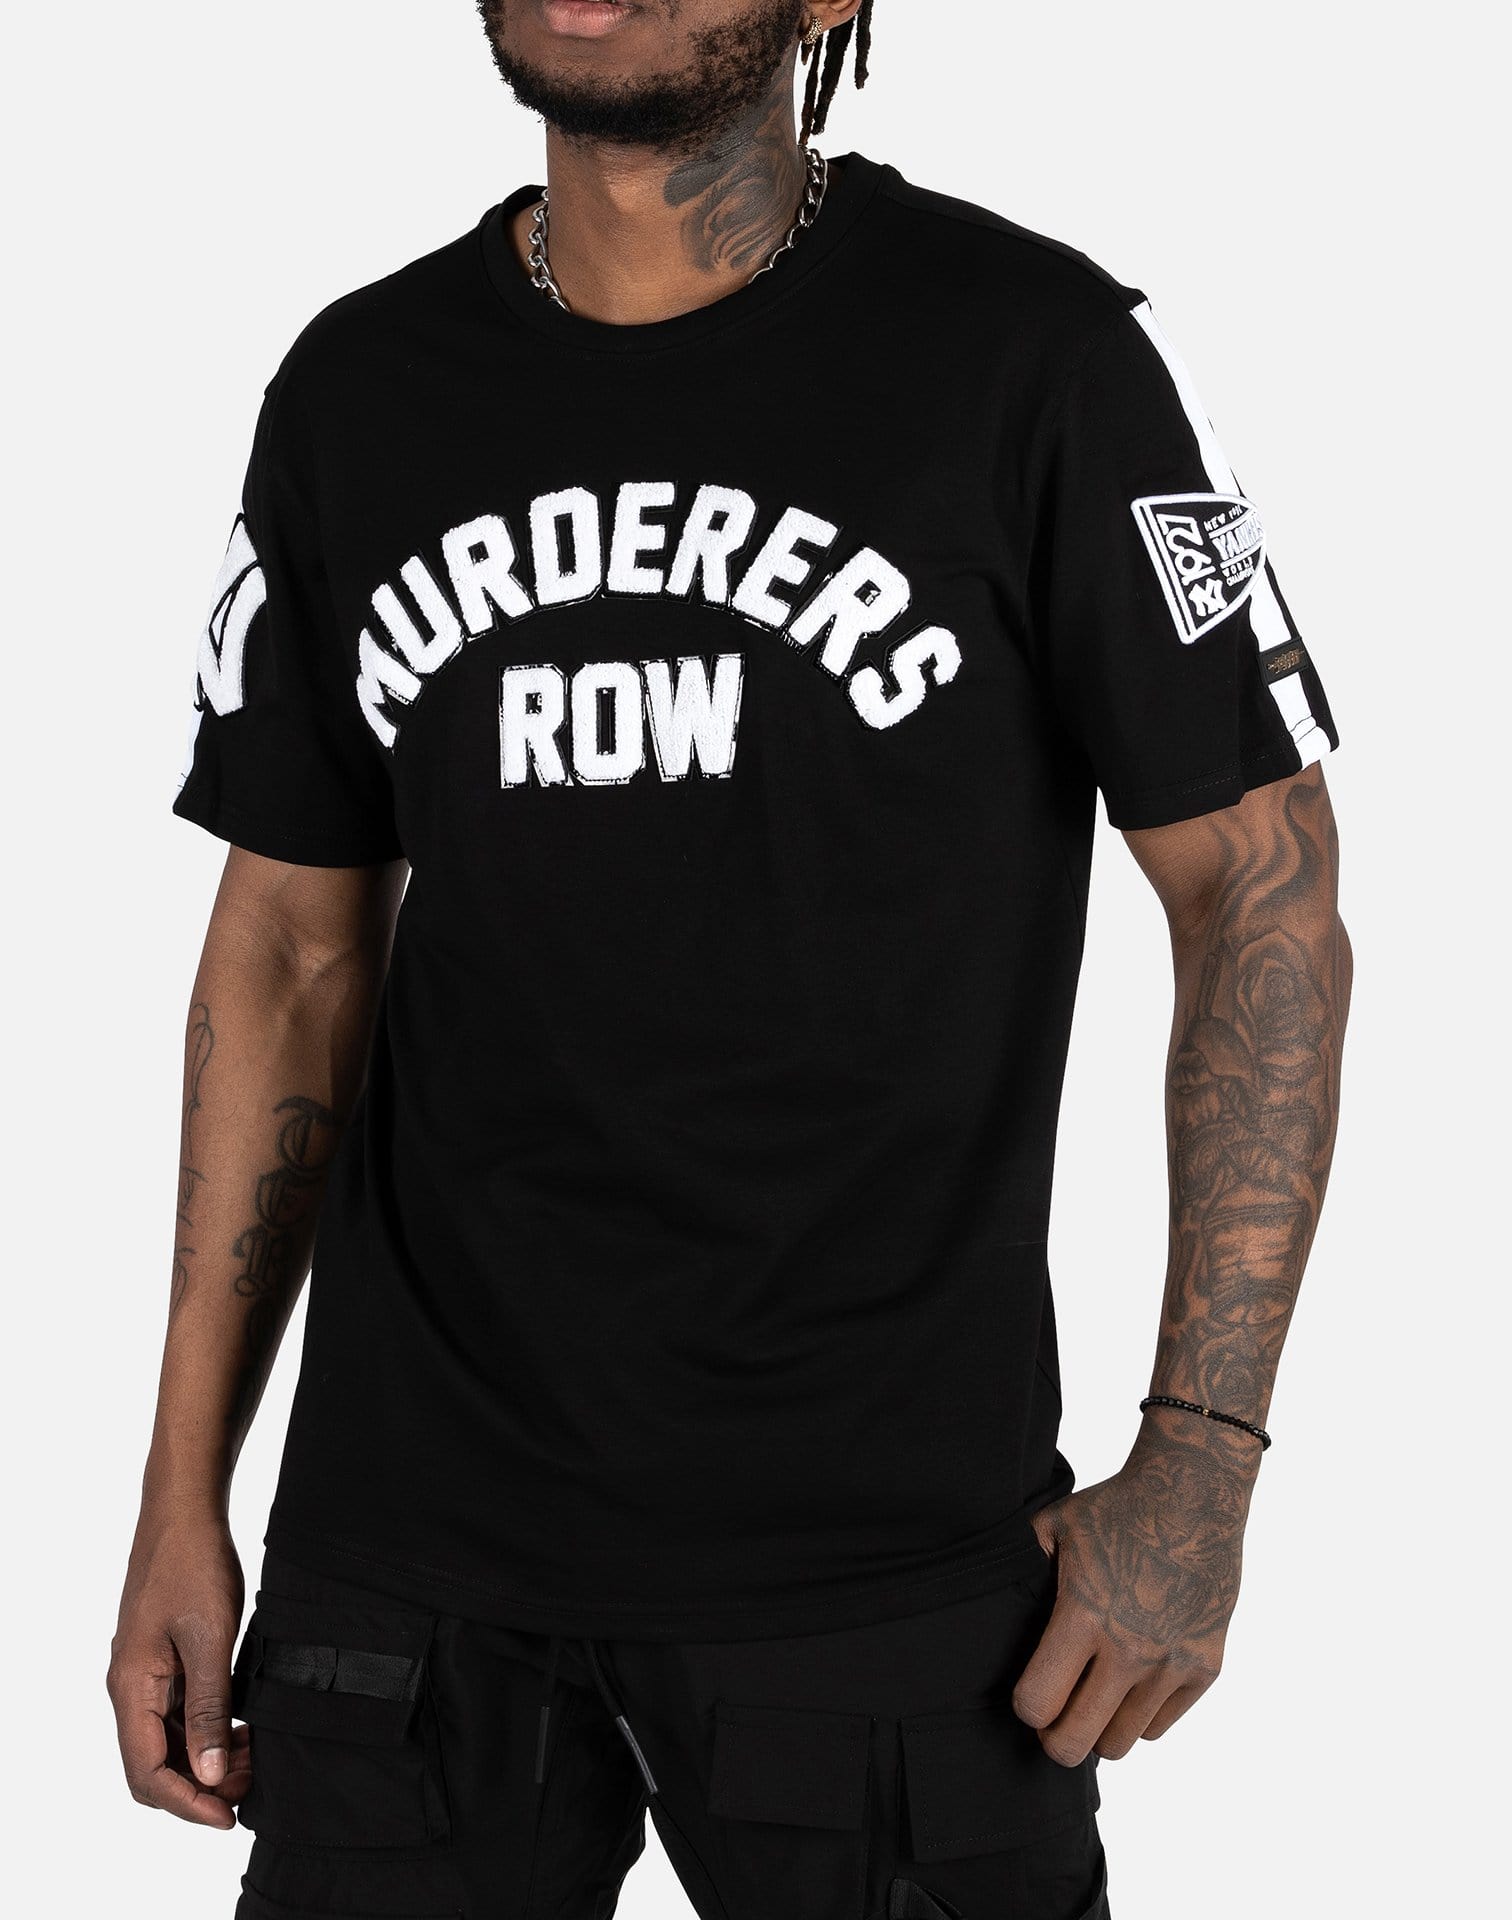 murderers row yankees shirt